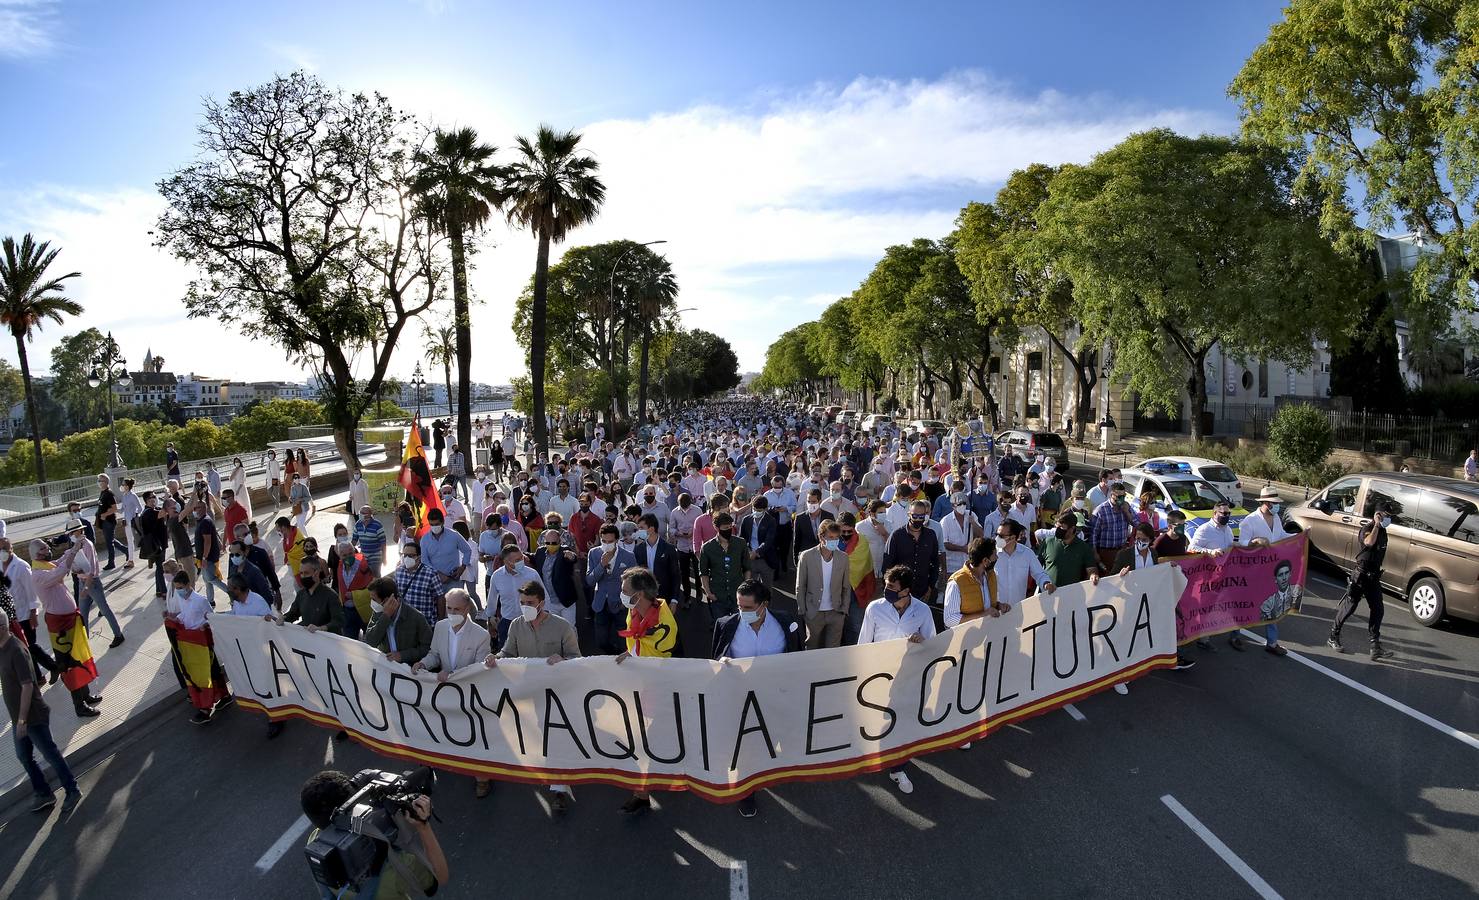 Cultura, educación y respeto: así fue la exitosa marcha taurina por las calles de Sevilla